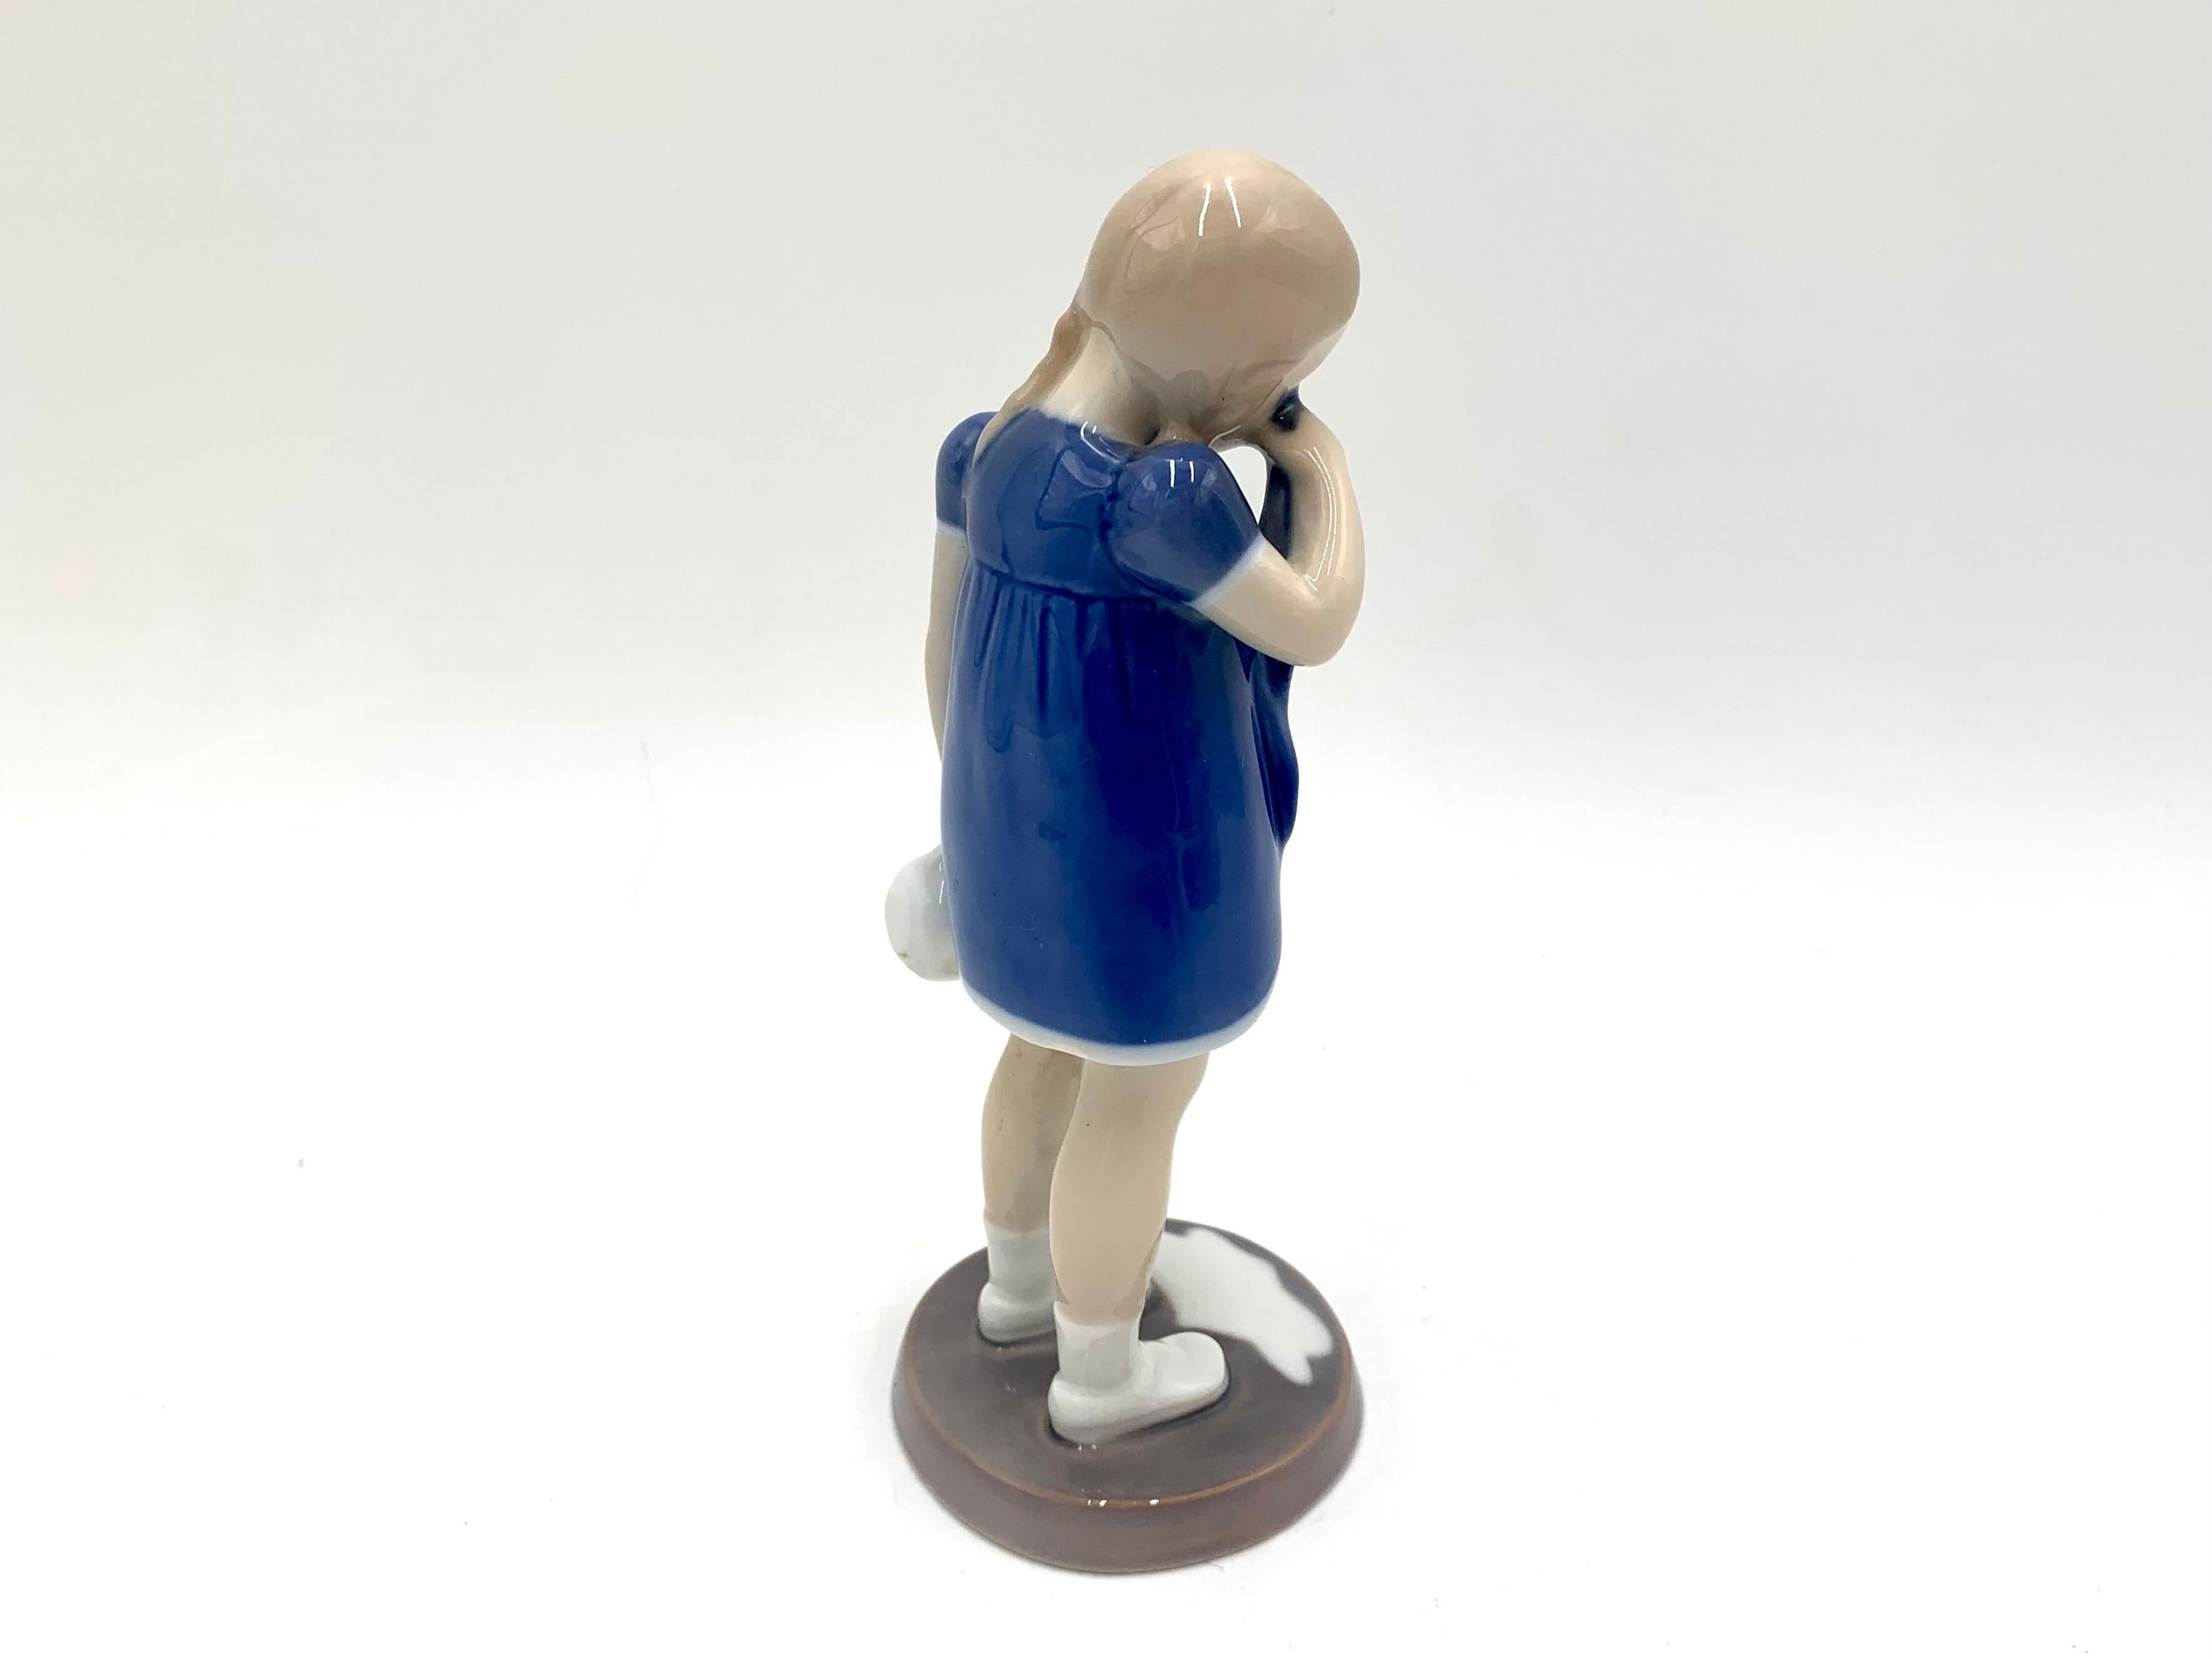 Danish Porcelain Figurine of a Crying Girl, Bing & Grondahl, Denmark, 1950s / 1960s